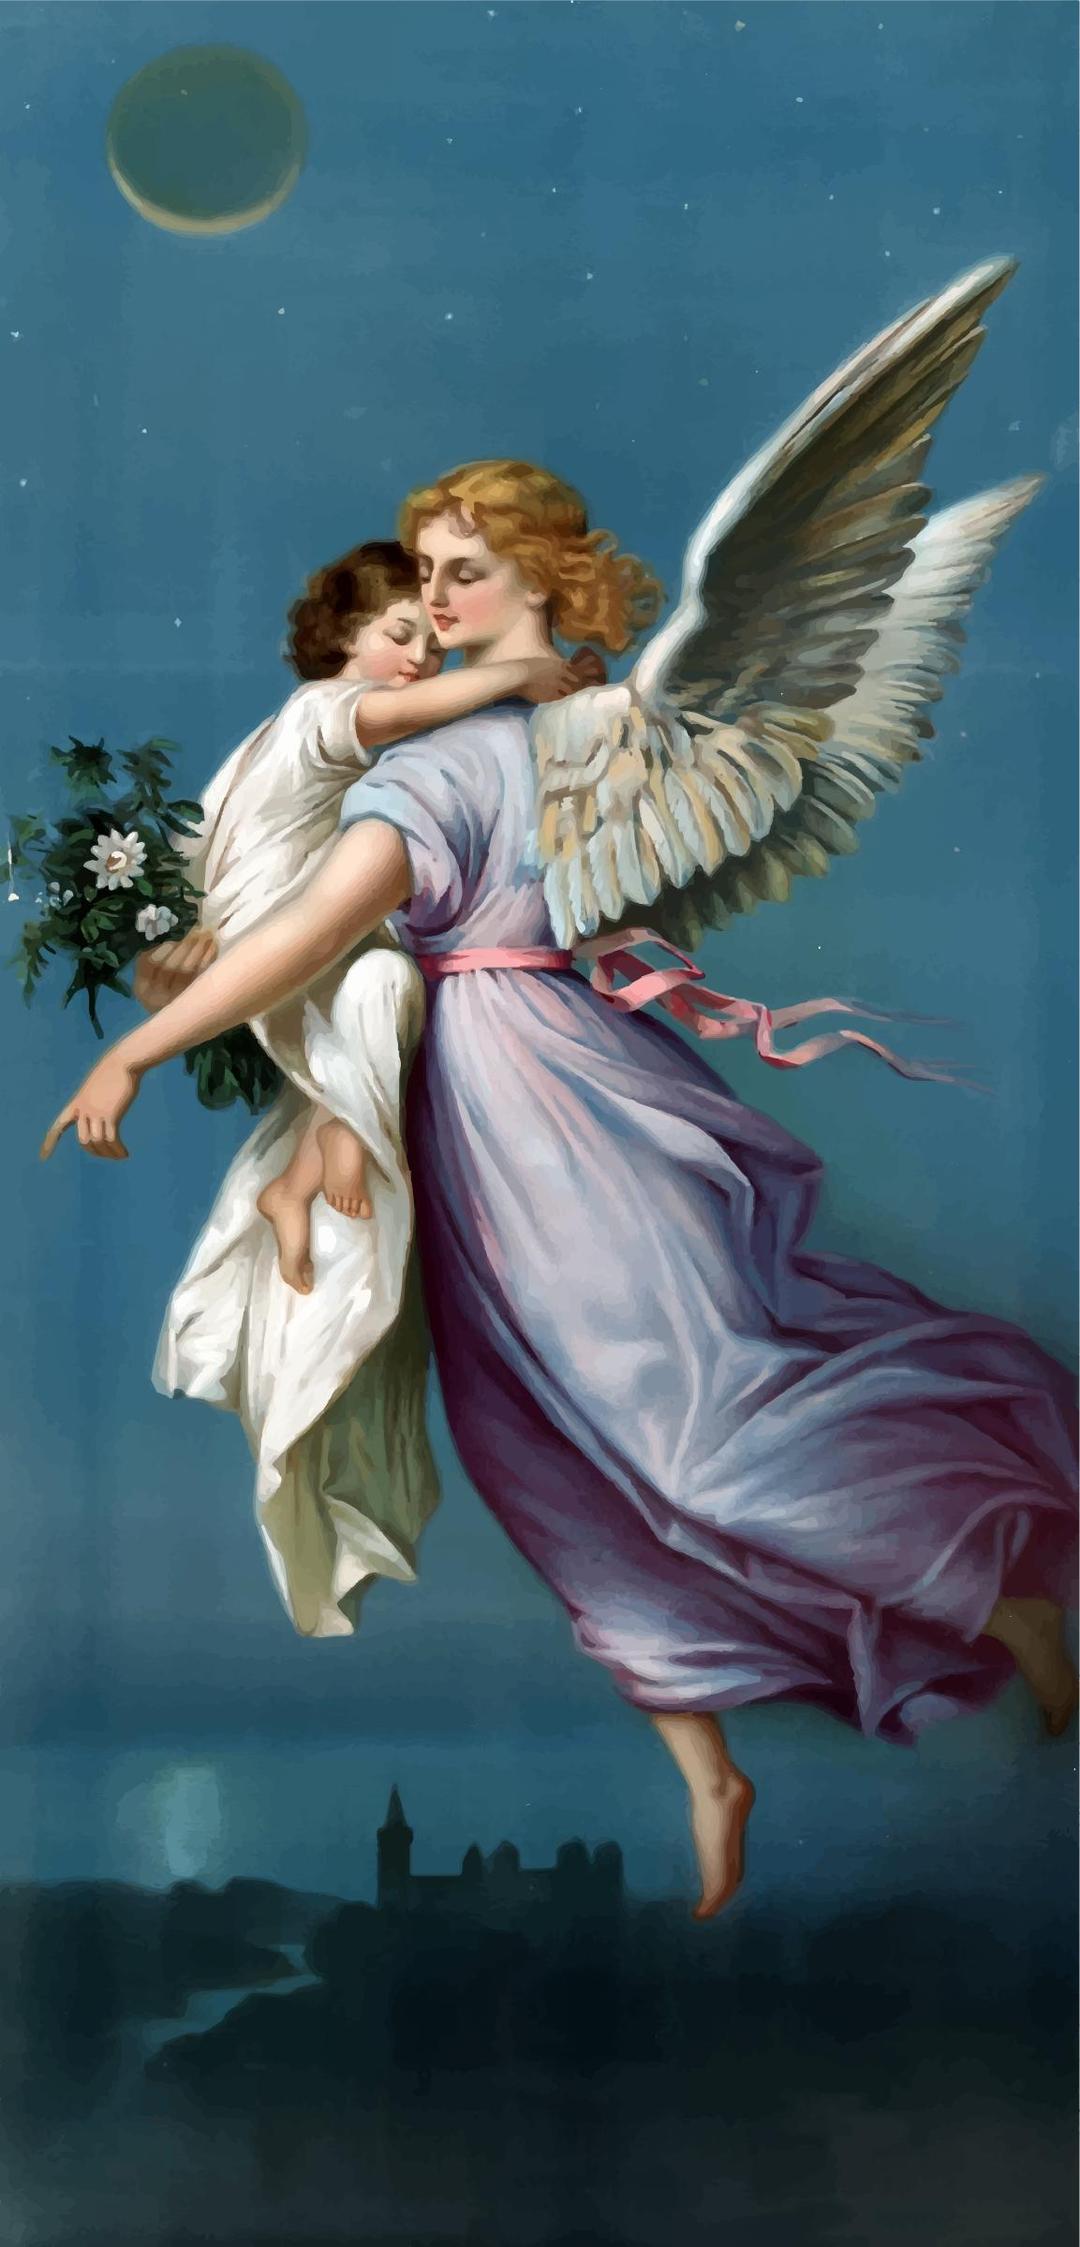 Vintage Angel And Child Illustration png transparent